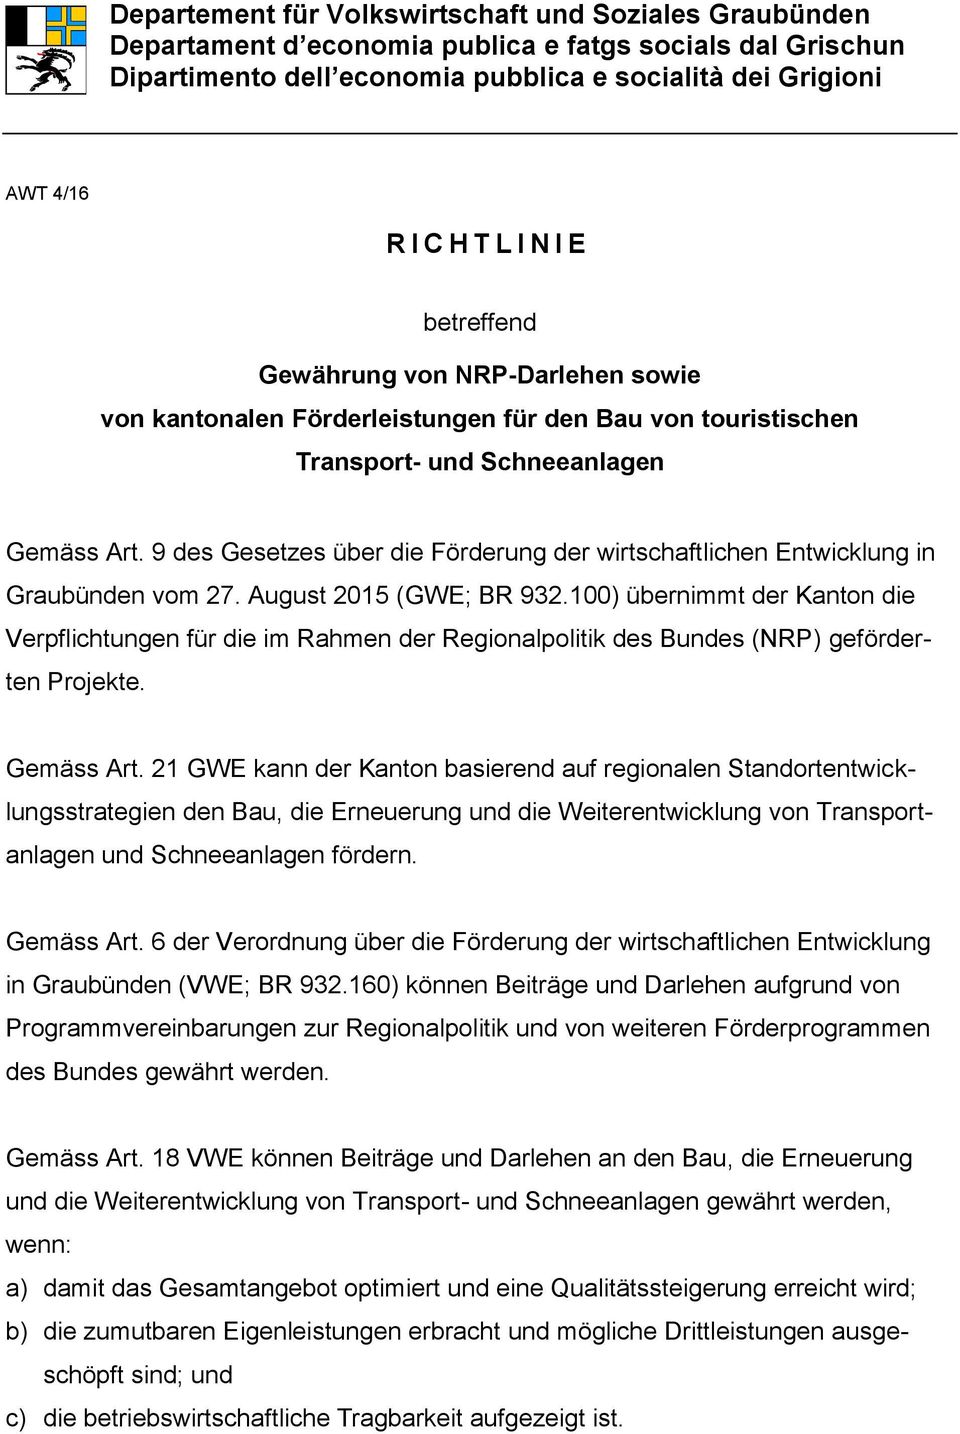 9 des Gesetzes über die Förderung der wirtschaftlichen Entwicklung in Graubünden vom 27. August 2015 (GWE; BR 932.